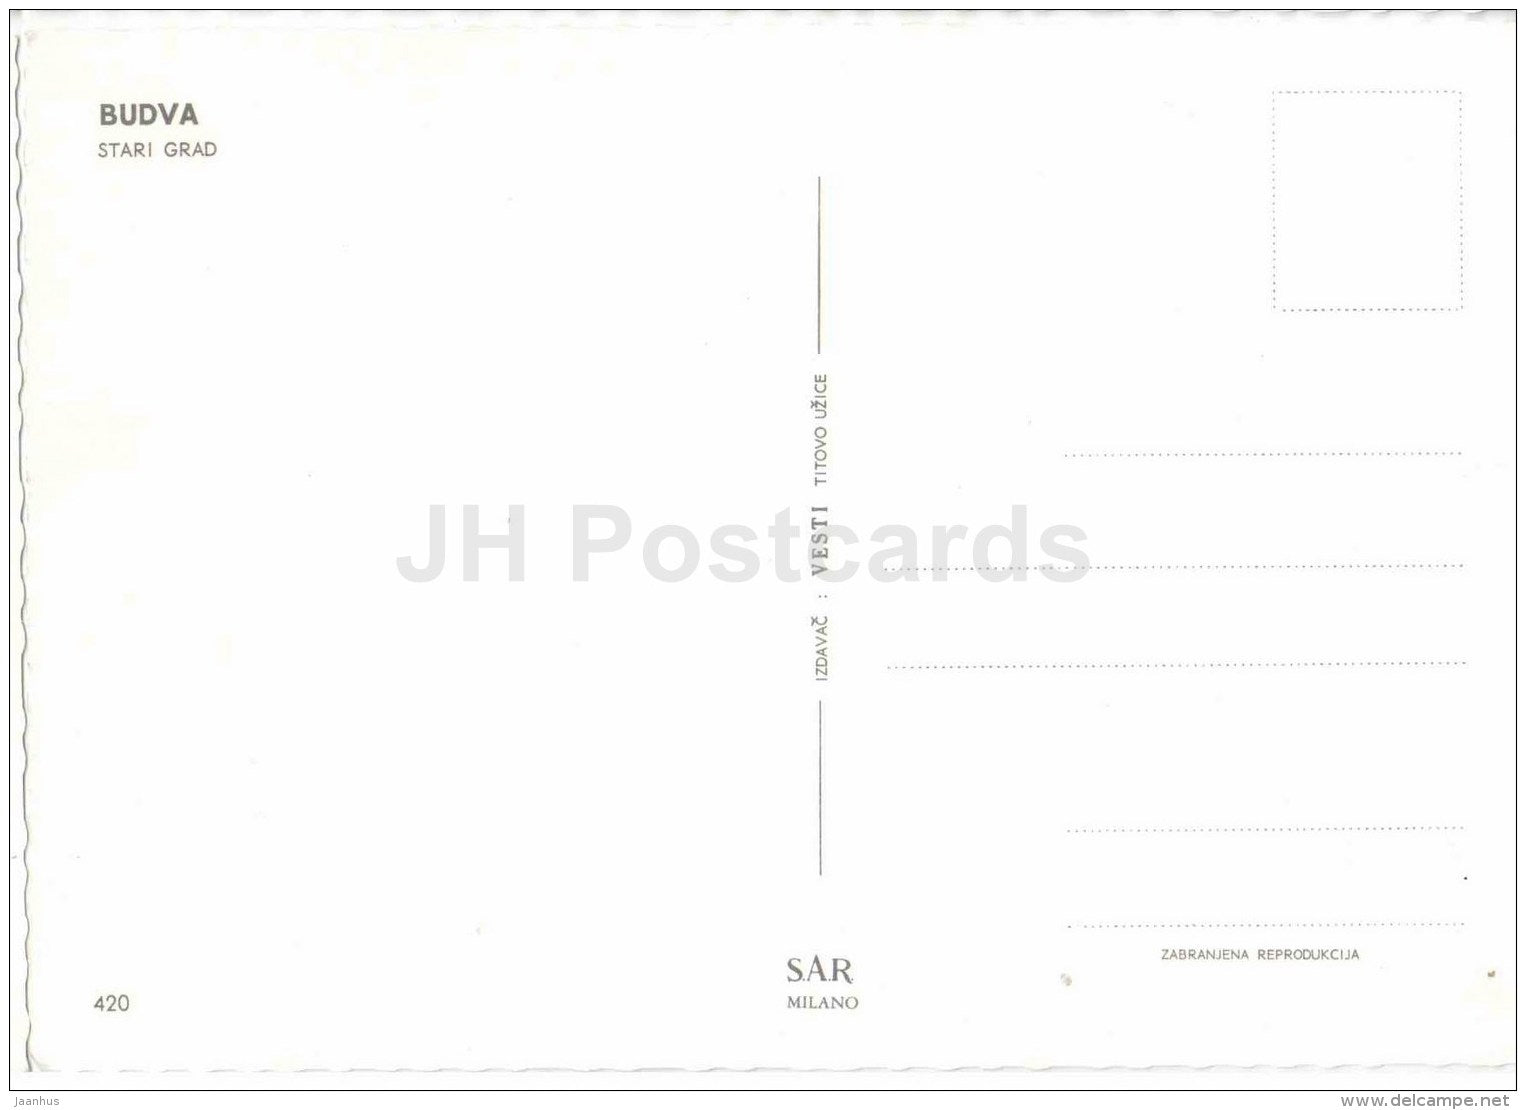 Stari Grad - Budva - 420 - Montenegro - Yugoslavia - unused - JH Postcards